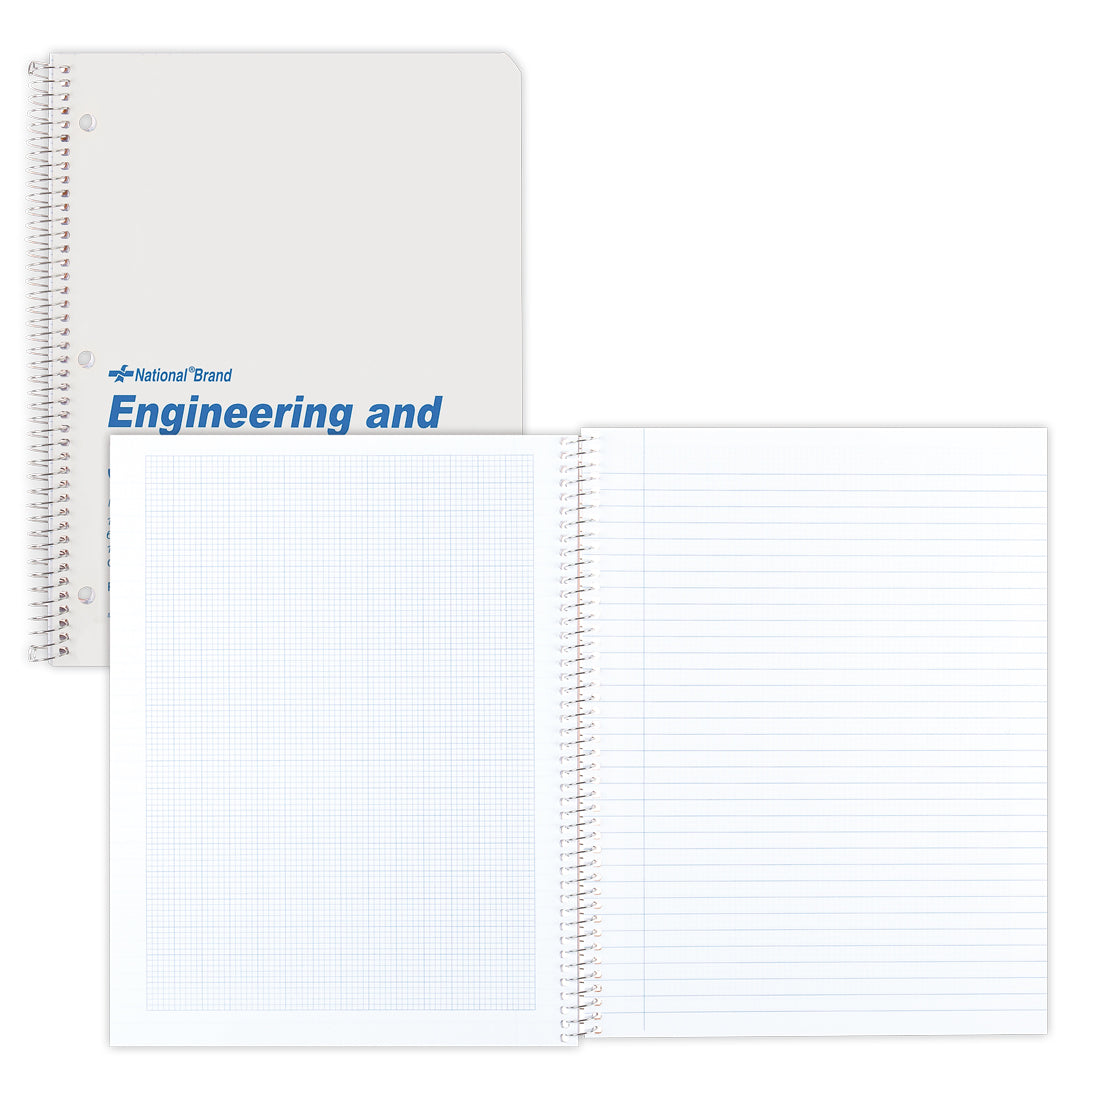 Engineering & Science Notebook